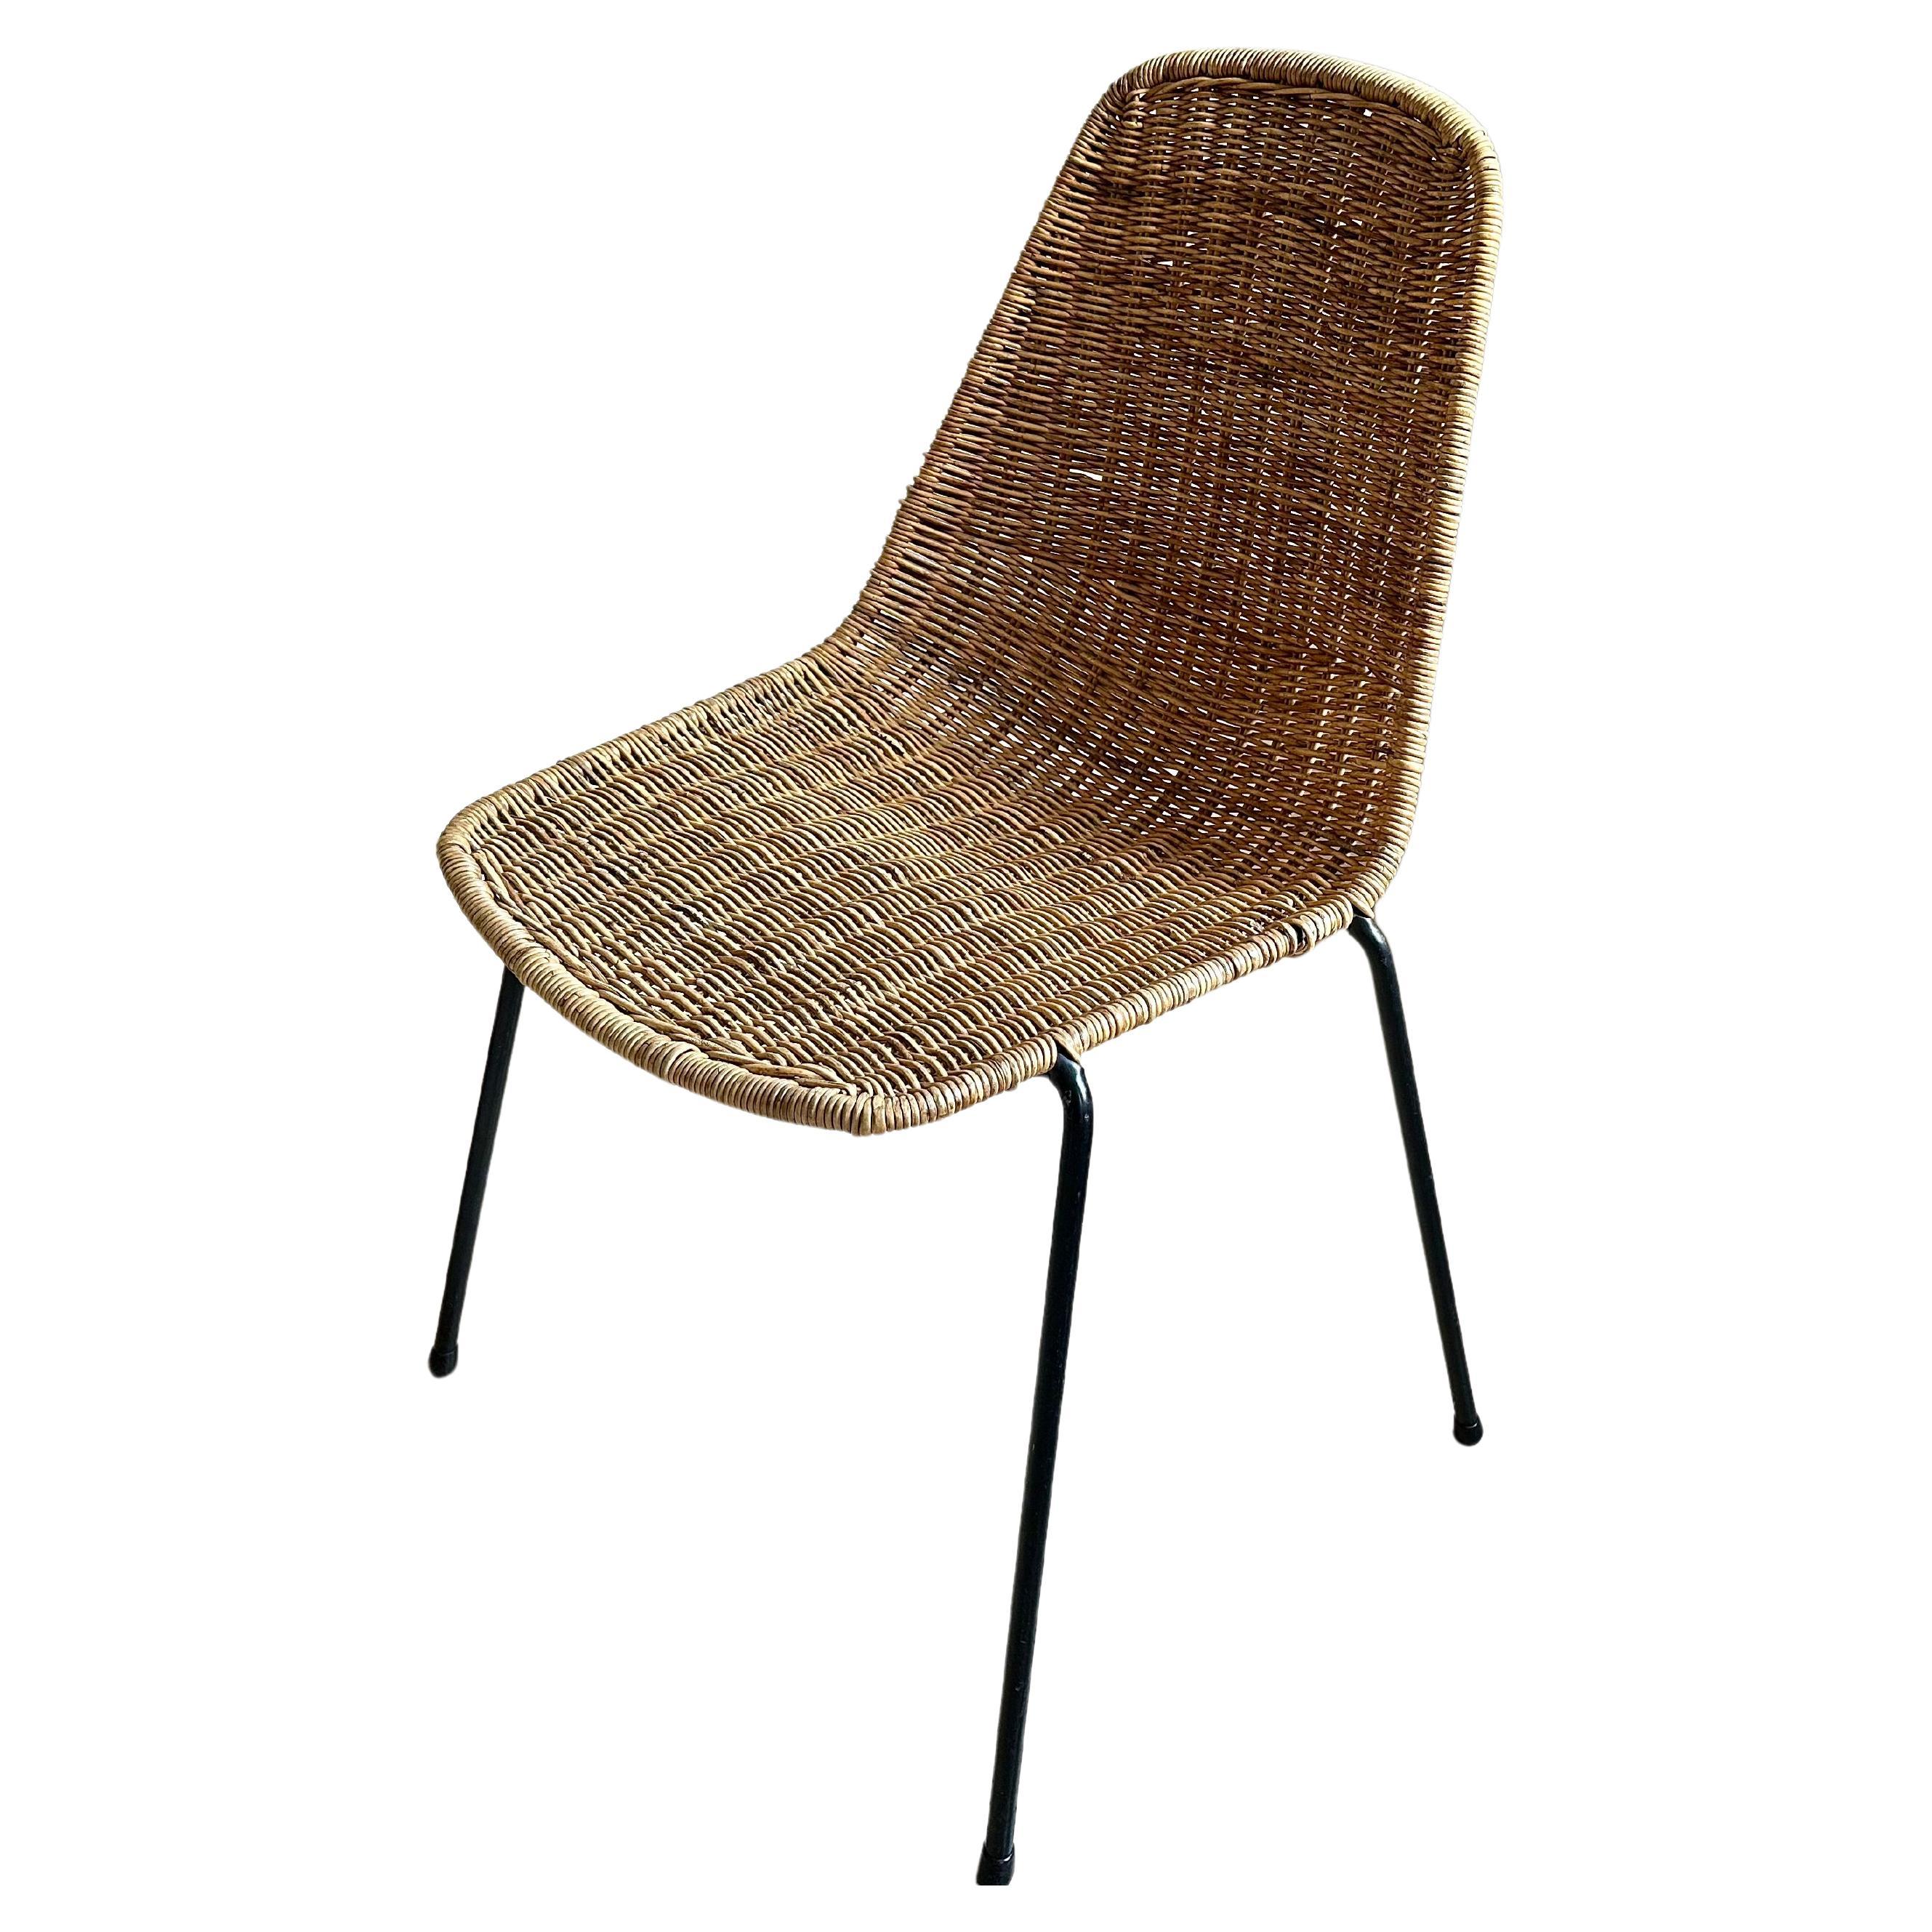 Timeless Elegance: Gian Franco Legler's Boho Basket Chair in Rattan For Sale